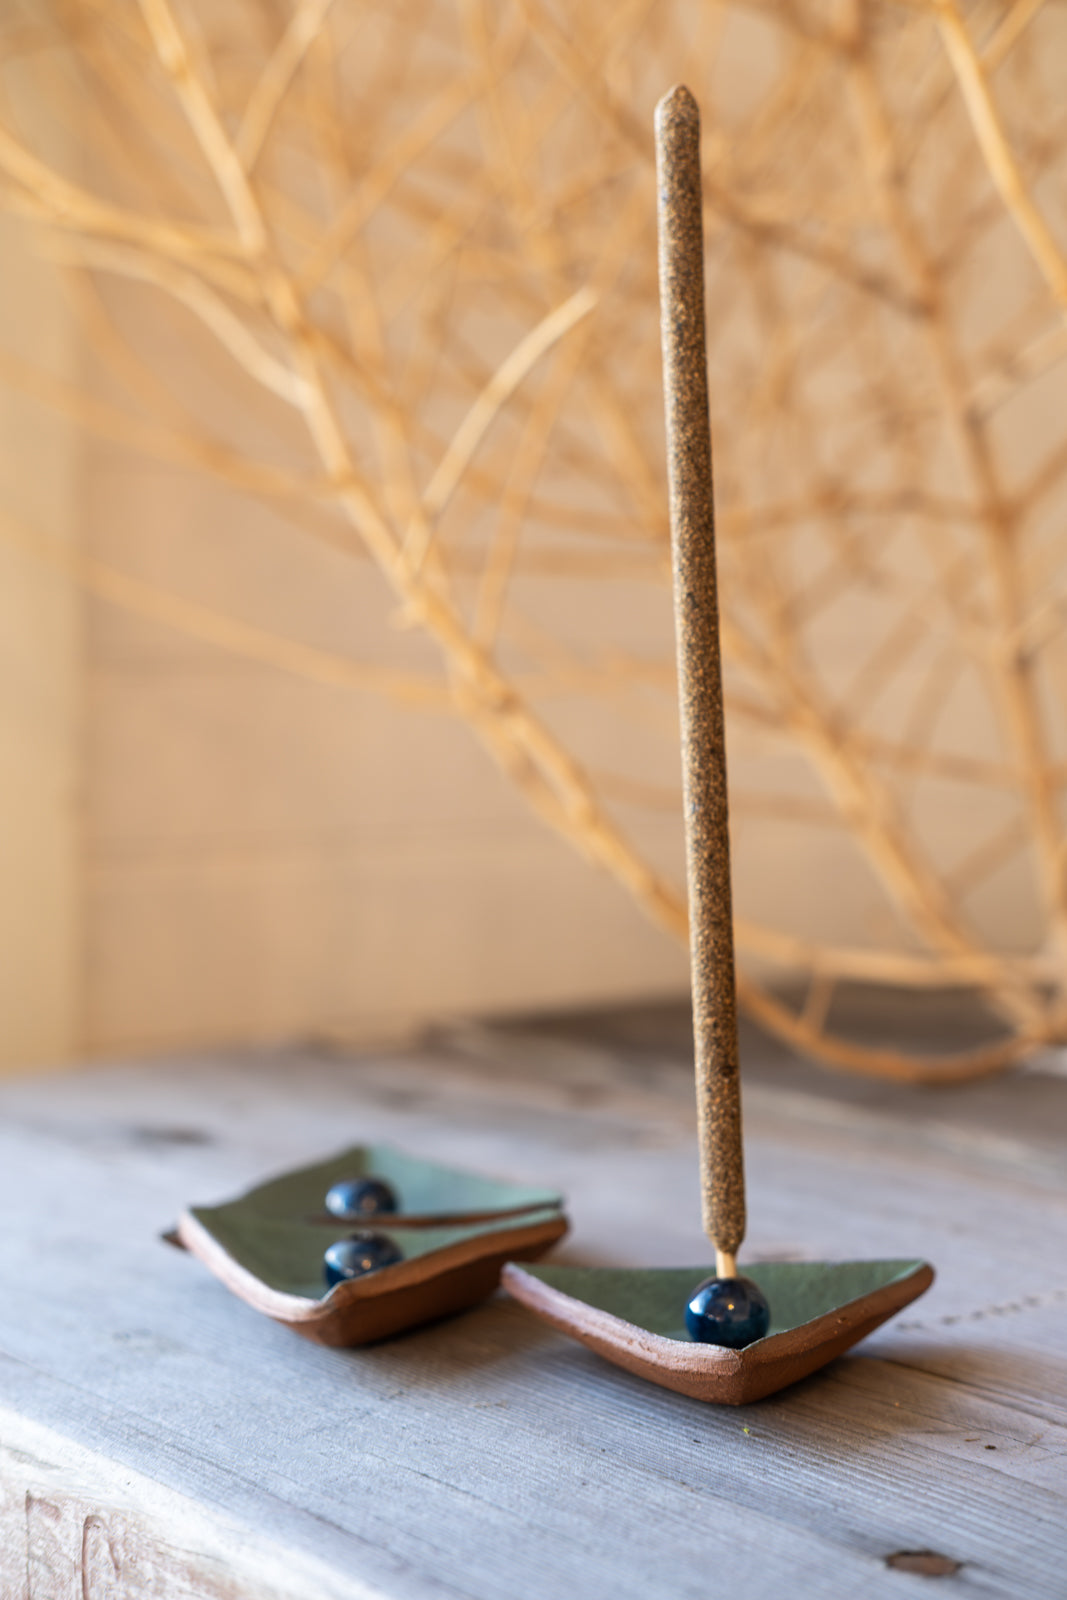 ceramic incense holder | incense stick holder